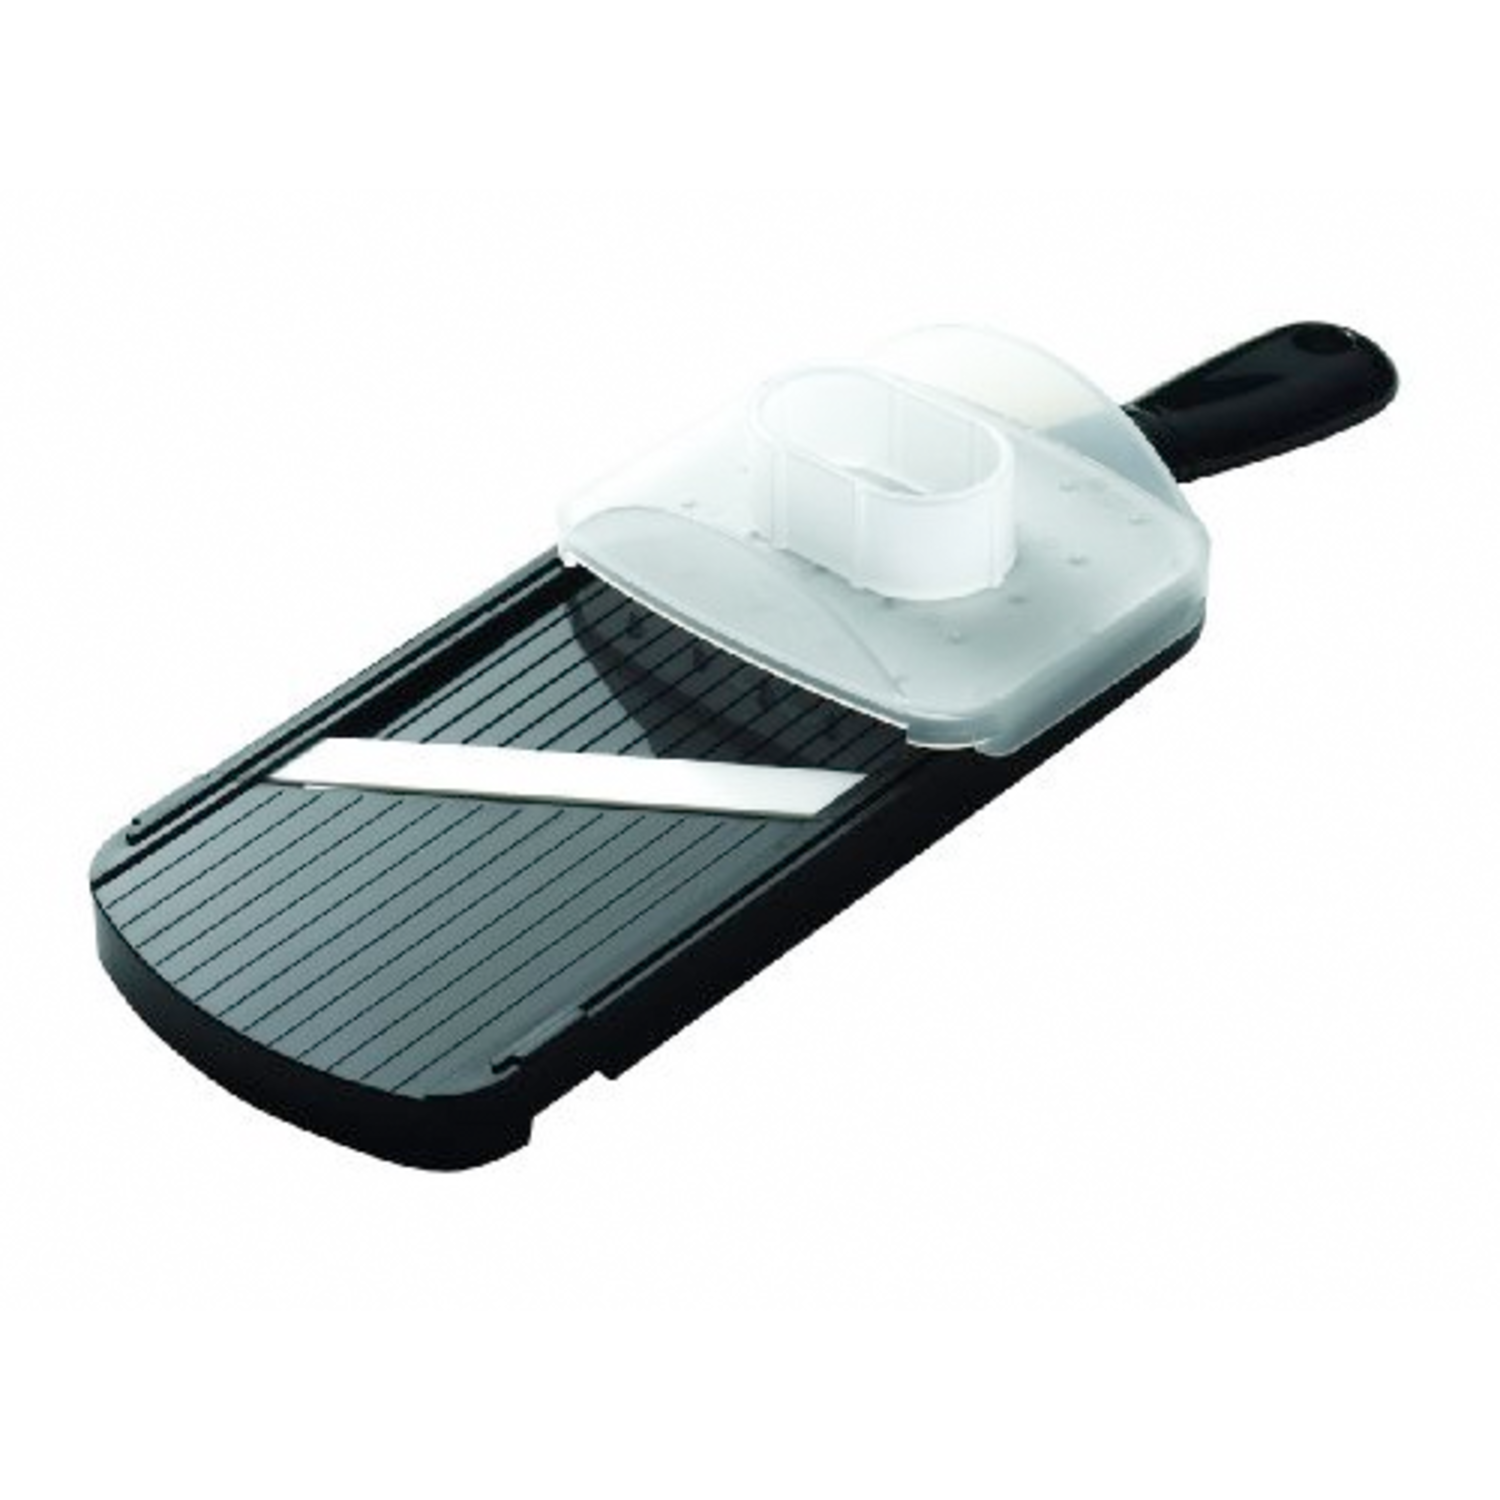 Kyocera Black Adjustable Ceramic Mandoline Slicer - Whisk